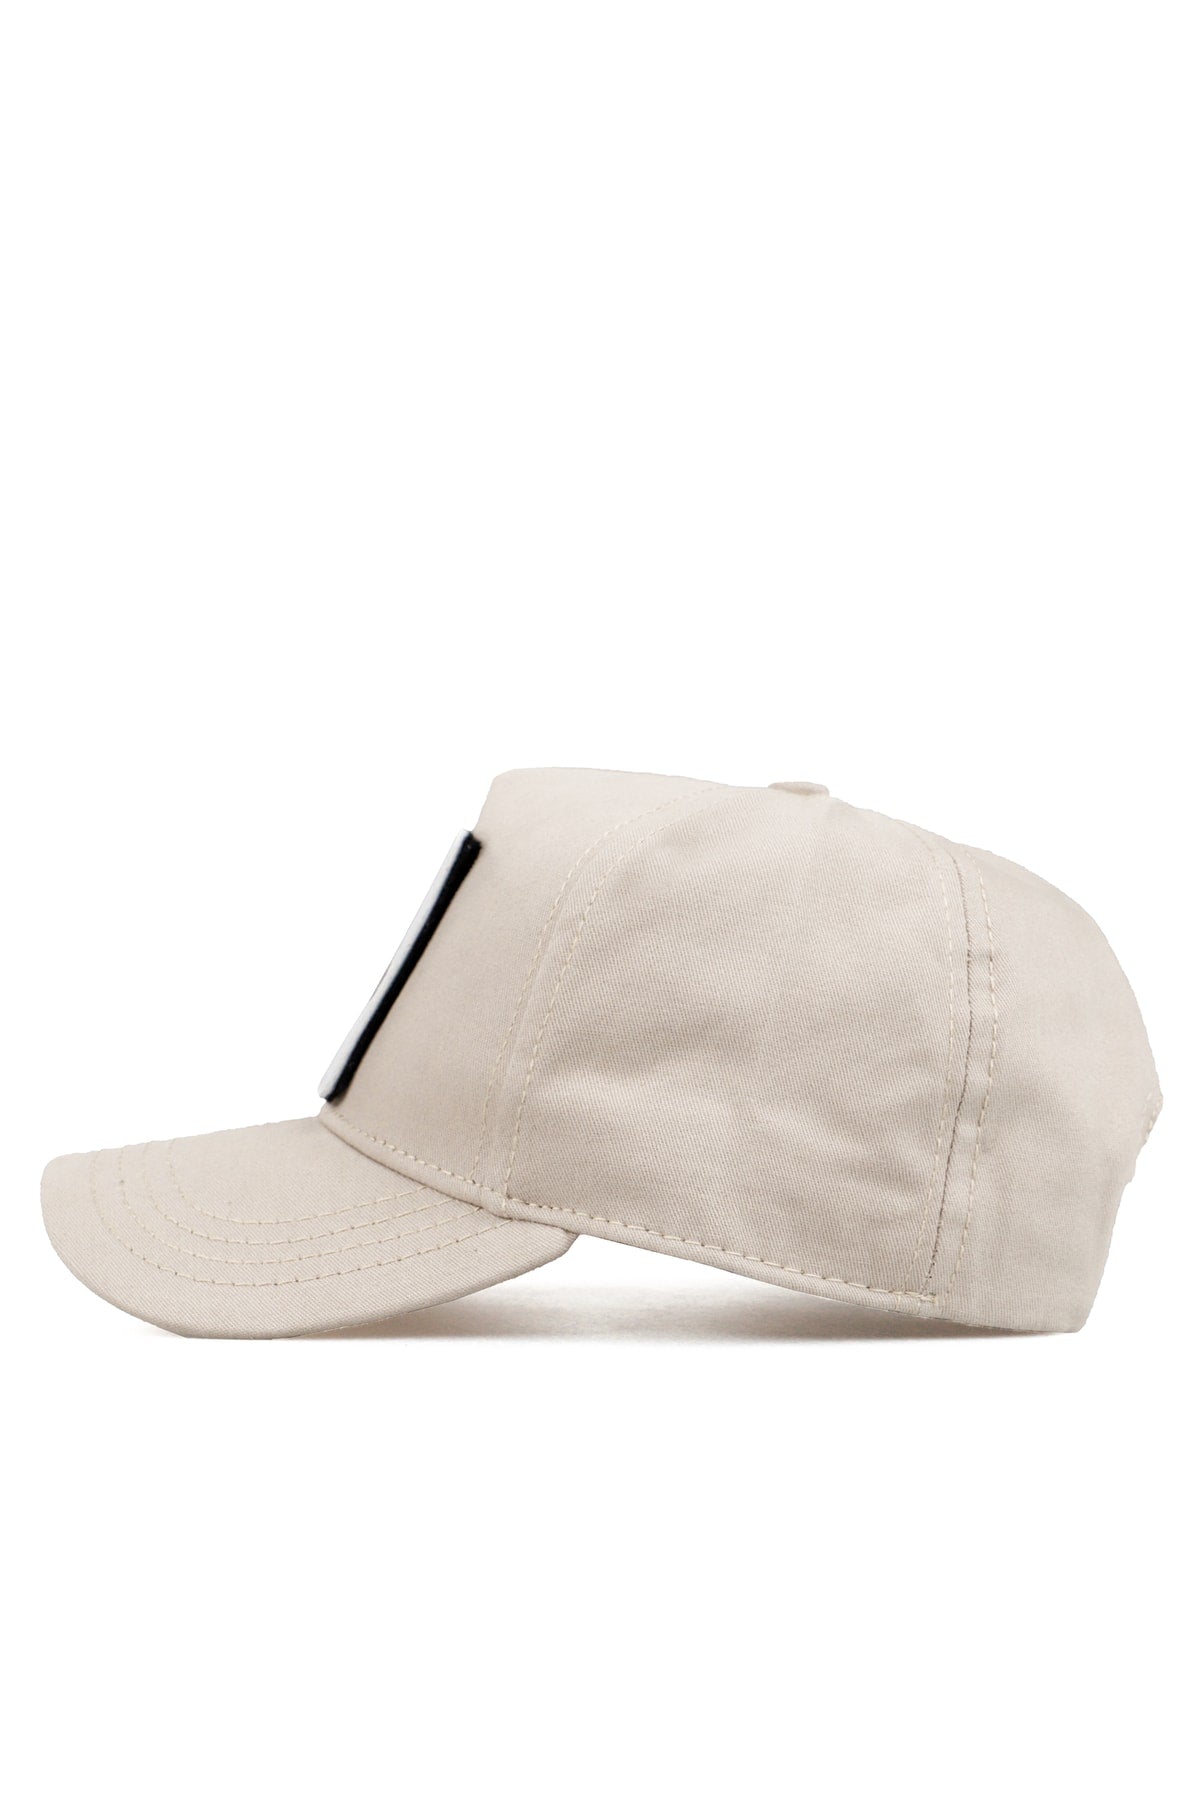 V1 Baseball Kartal - 6 Code Logo Unisex Beige Hat (Cap)